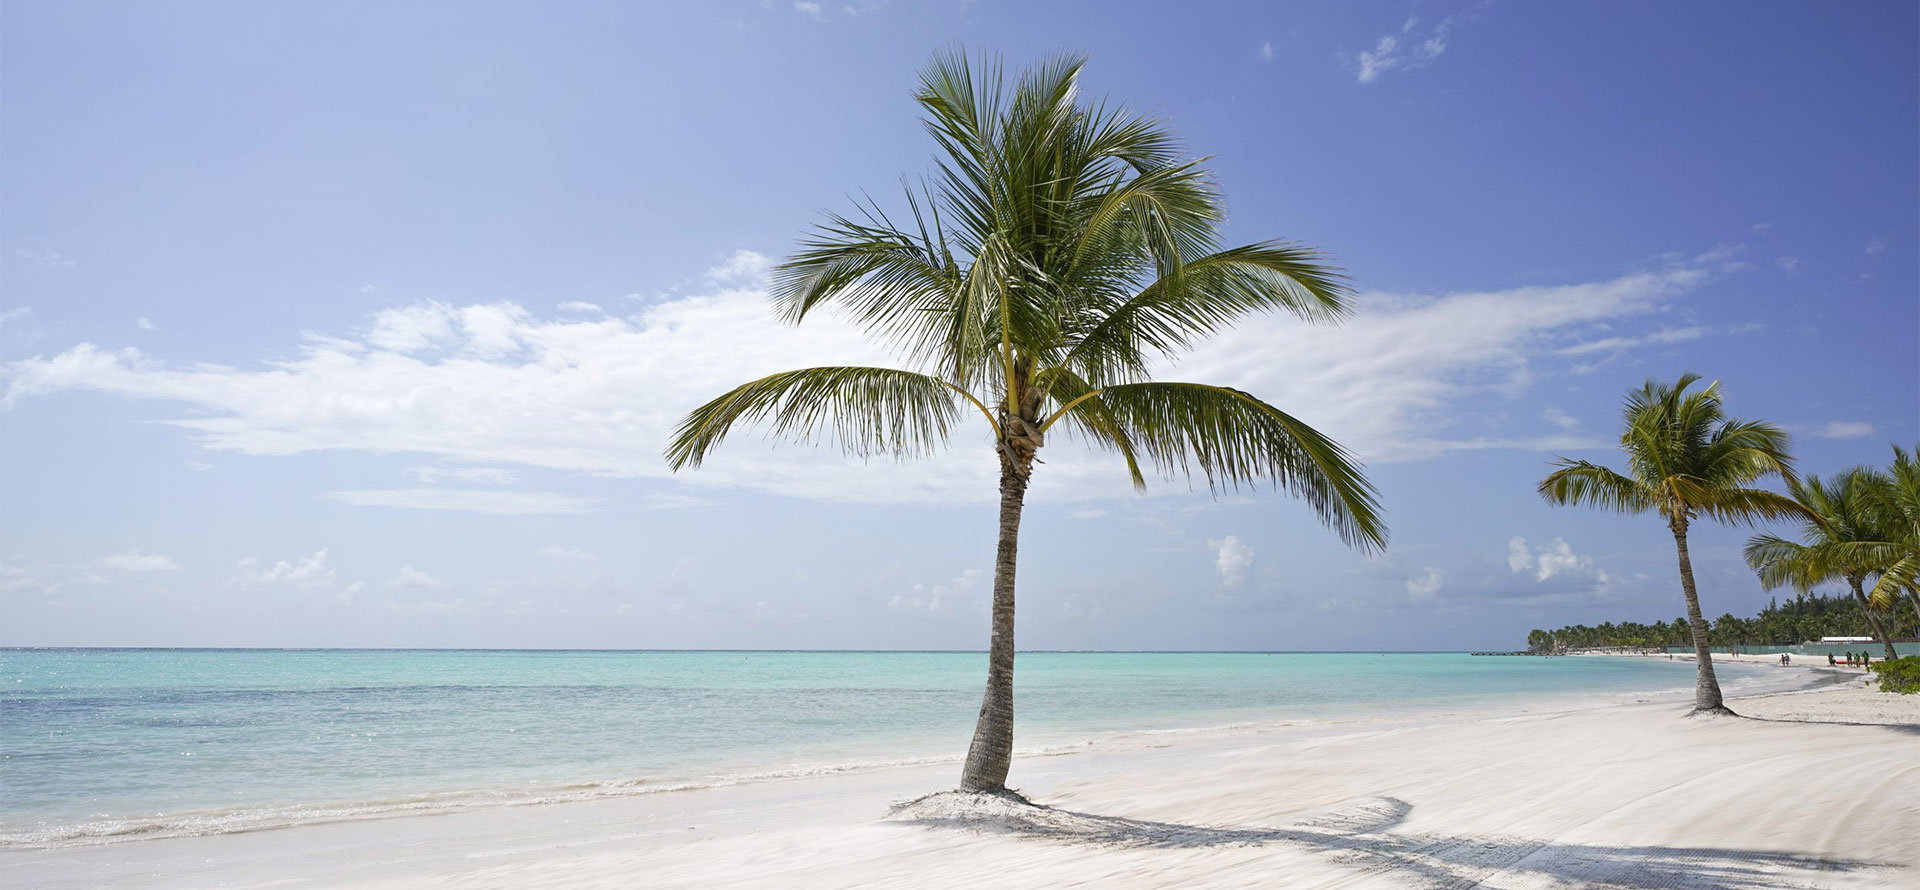 Punta cana honeymoon palm tree.